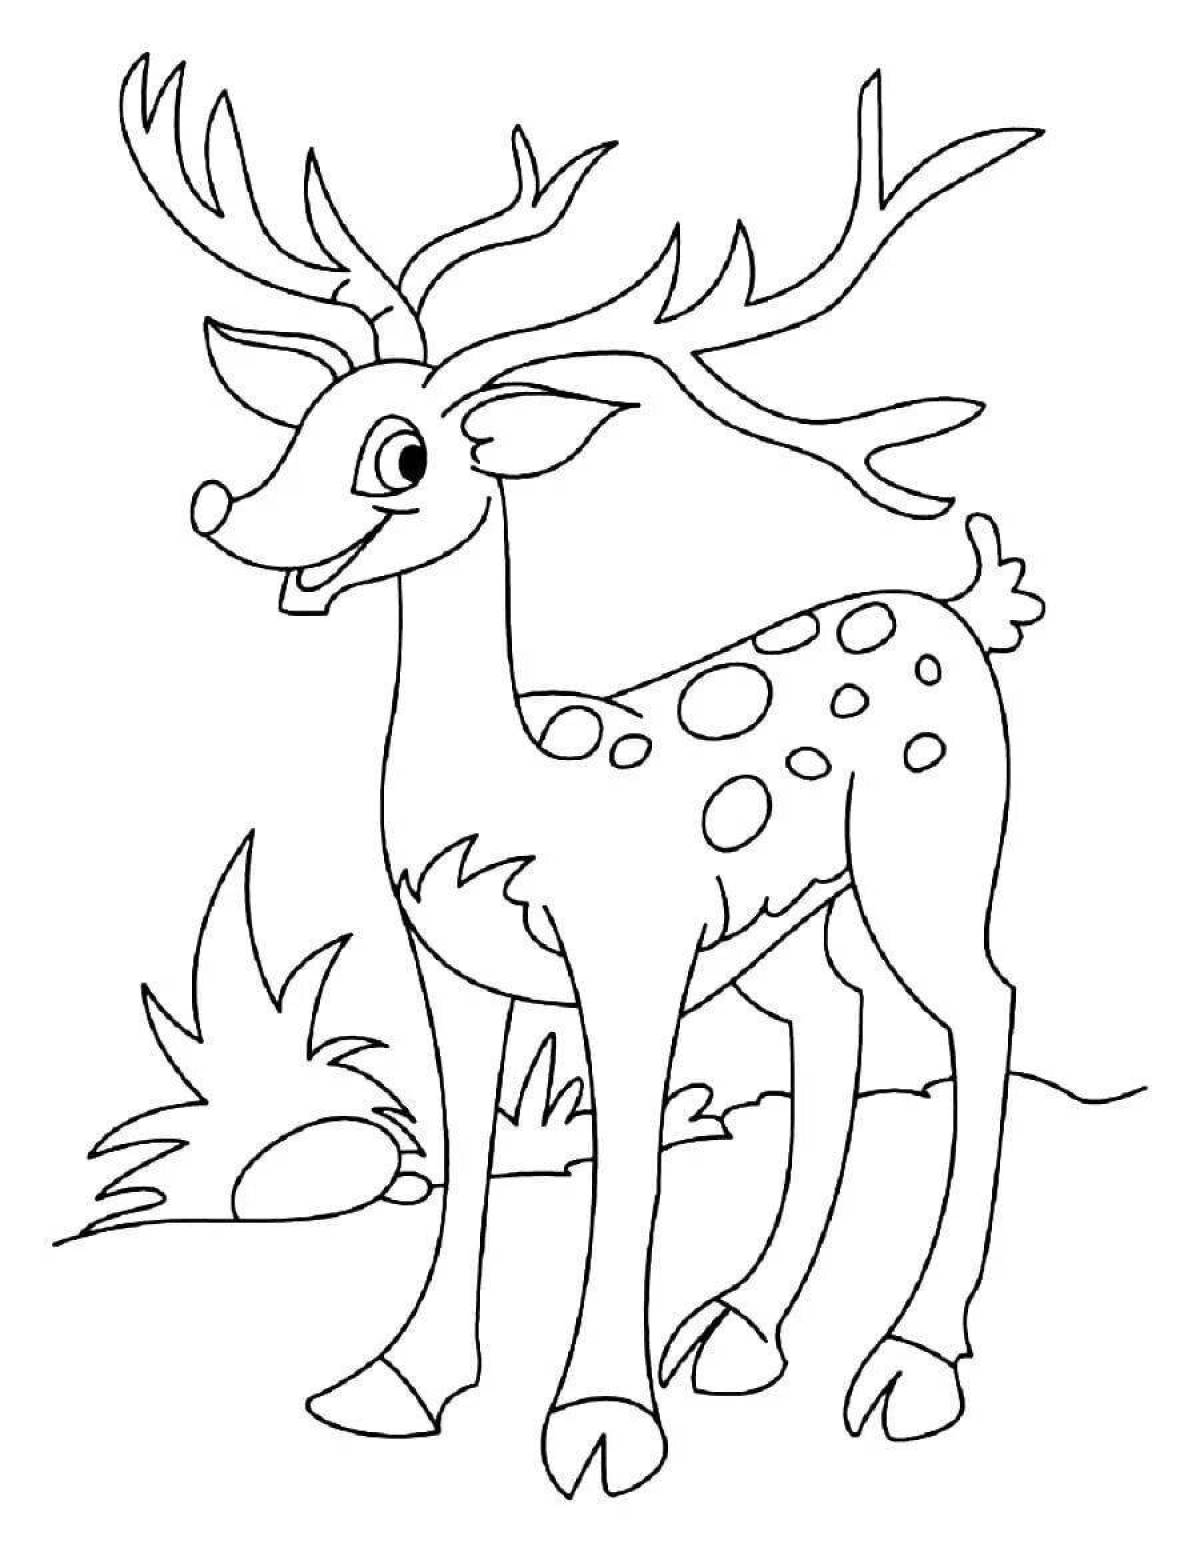 Joyful coloring deer for children 3-4 years old